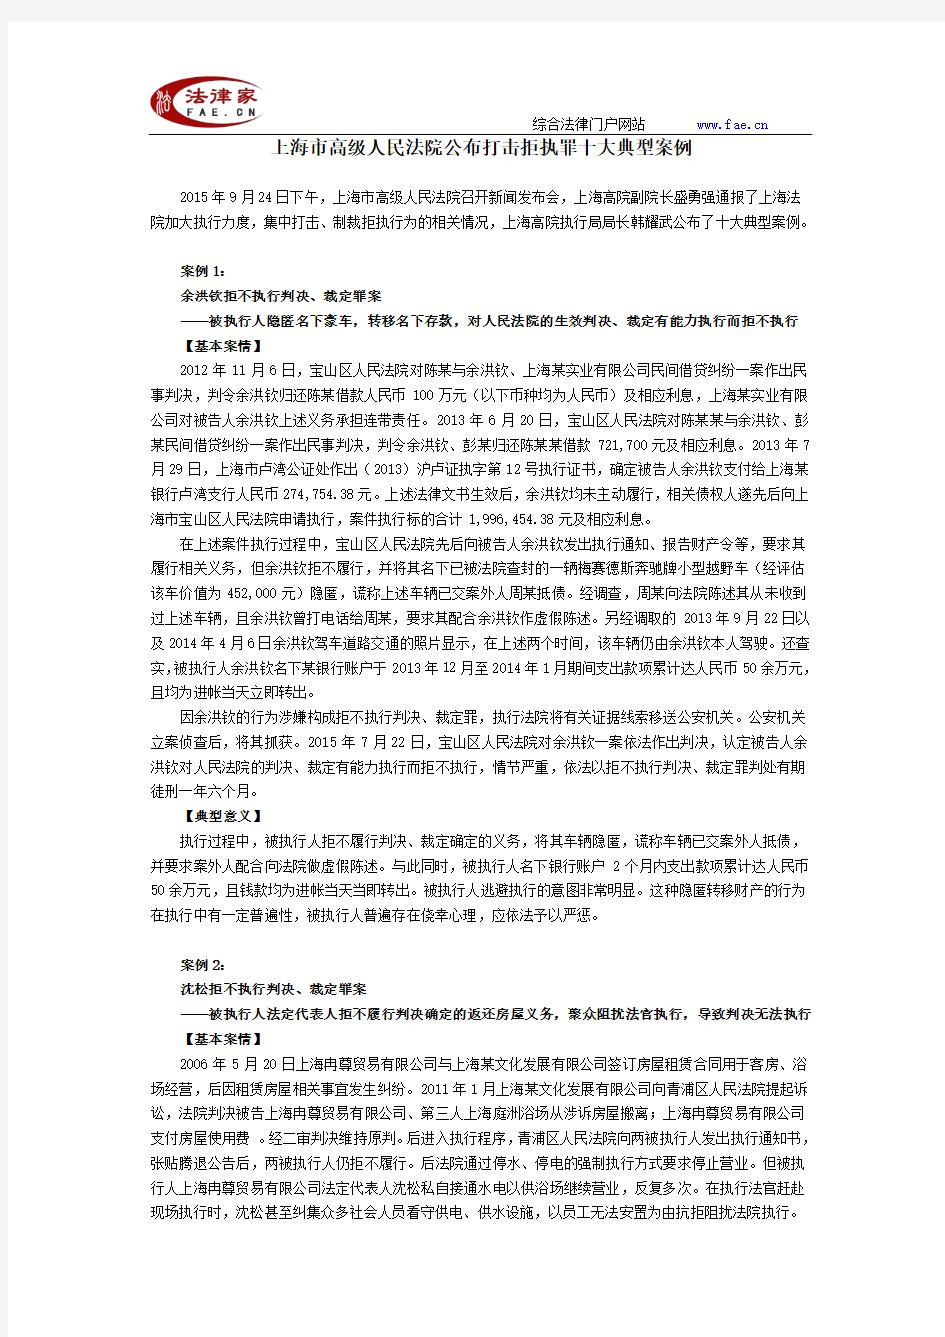 上海市高级人民法院公布打击拒执罪十大典型案例